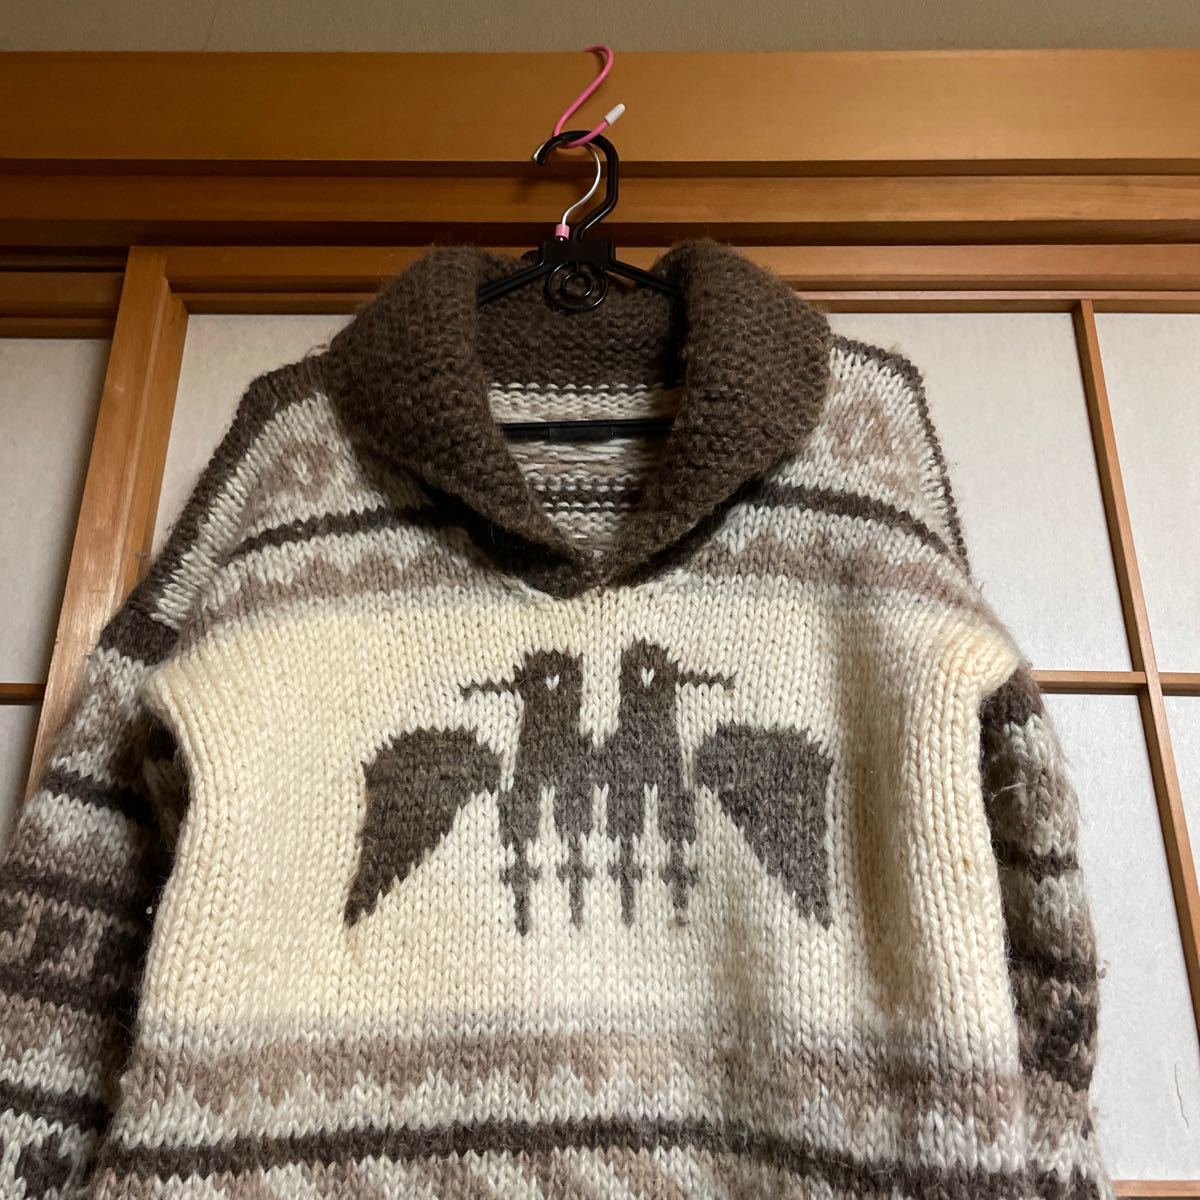 10%割引可能！カナダ製高級毛糸。母の手編み　カウチンセーター ショールカラー　身長173の私に半年かけて編んだカウチンニット。